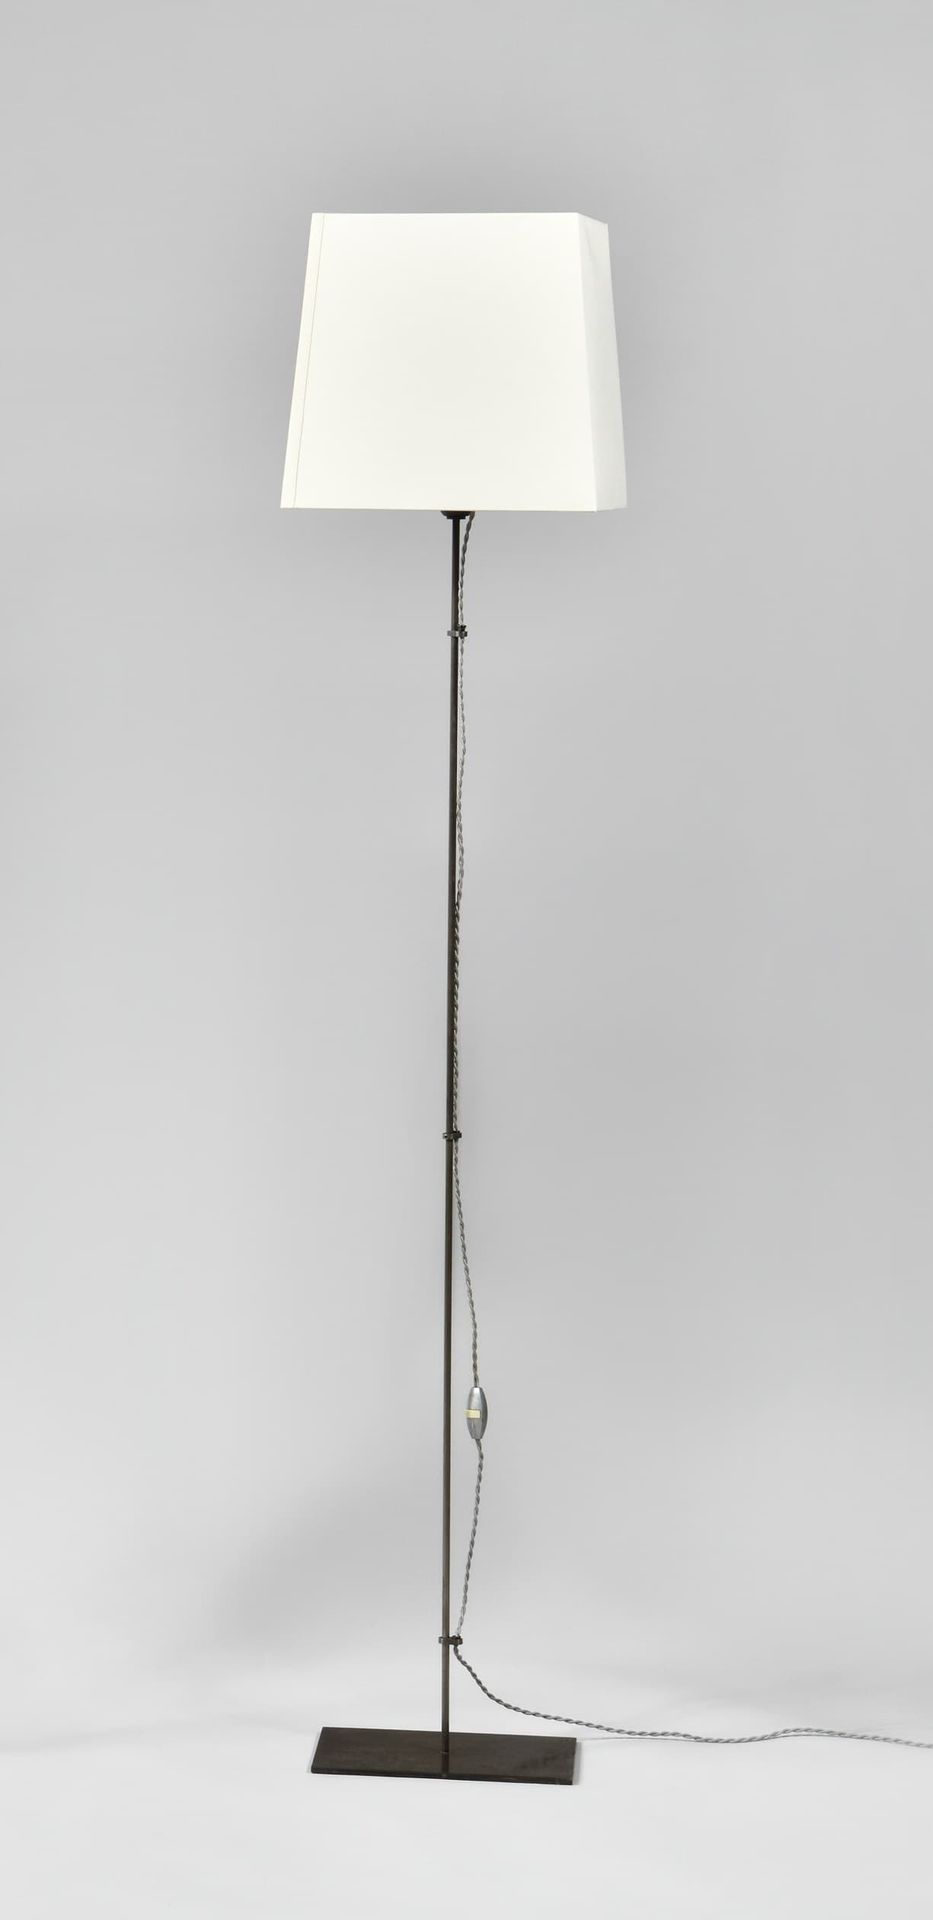 Null 克里斯蒂安-莱格尔 (1943-2020)
阿西尔 "模型
落地灯，长方形底座上有带钢丝的灯杆
签有字母图案
高度：137厘米